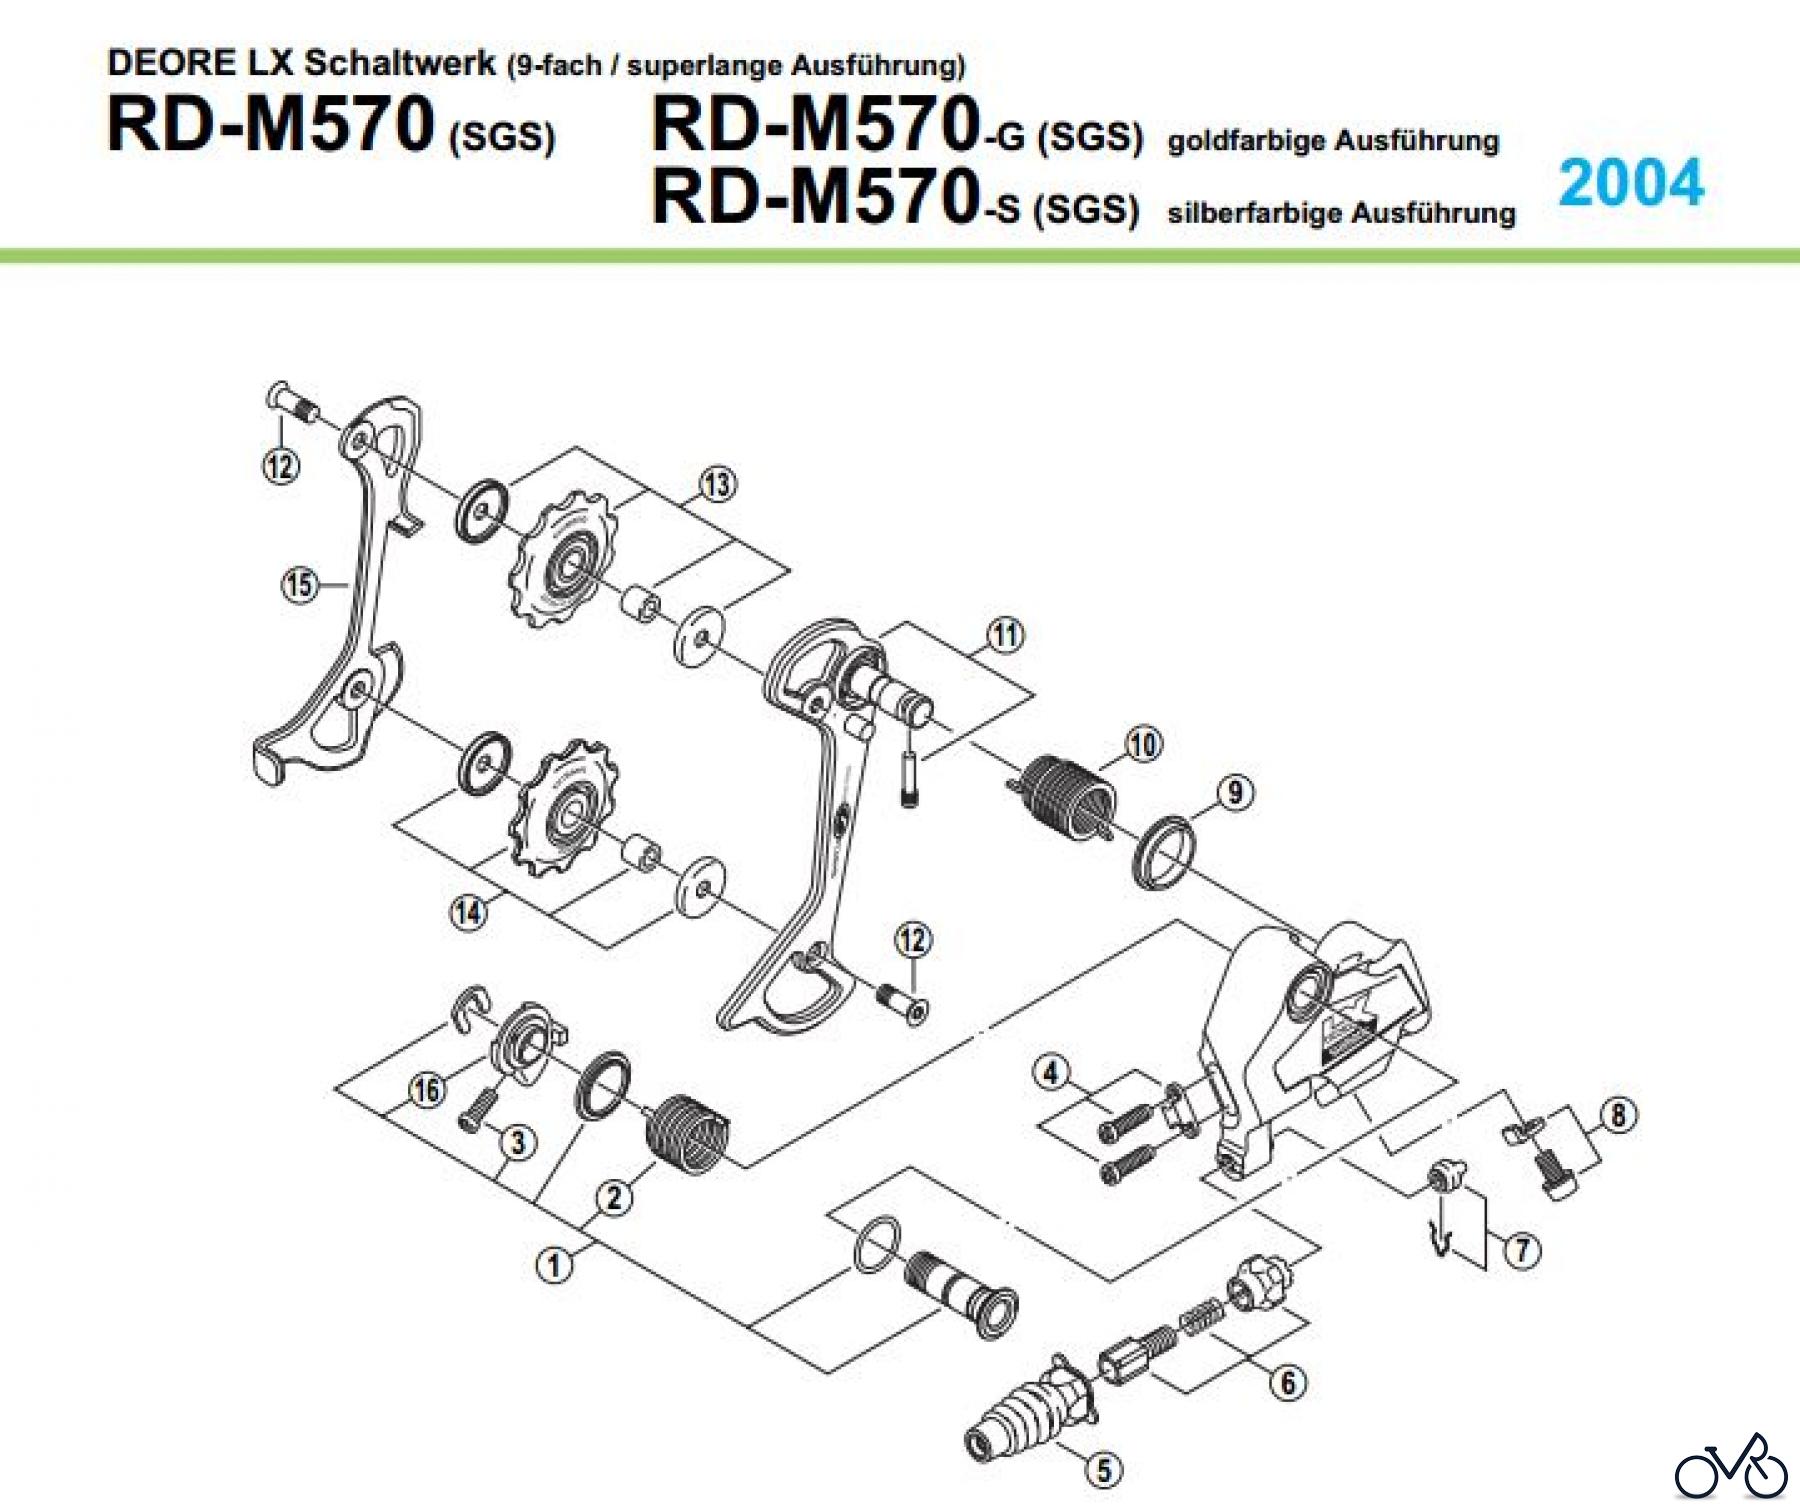  Shimano RD Rear Derailleur - Schaltwerk RD-M570-Deore-LX